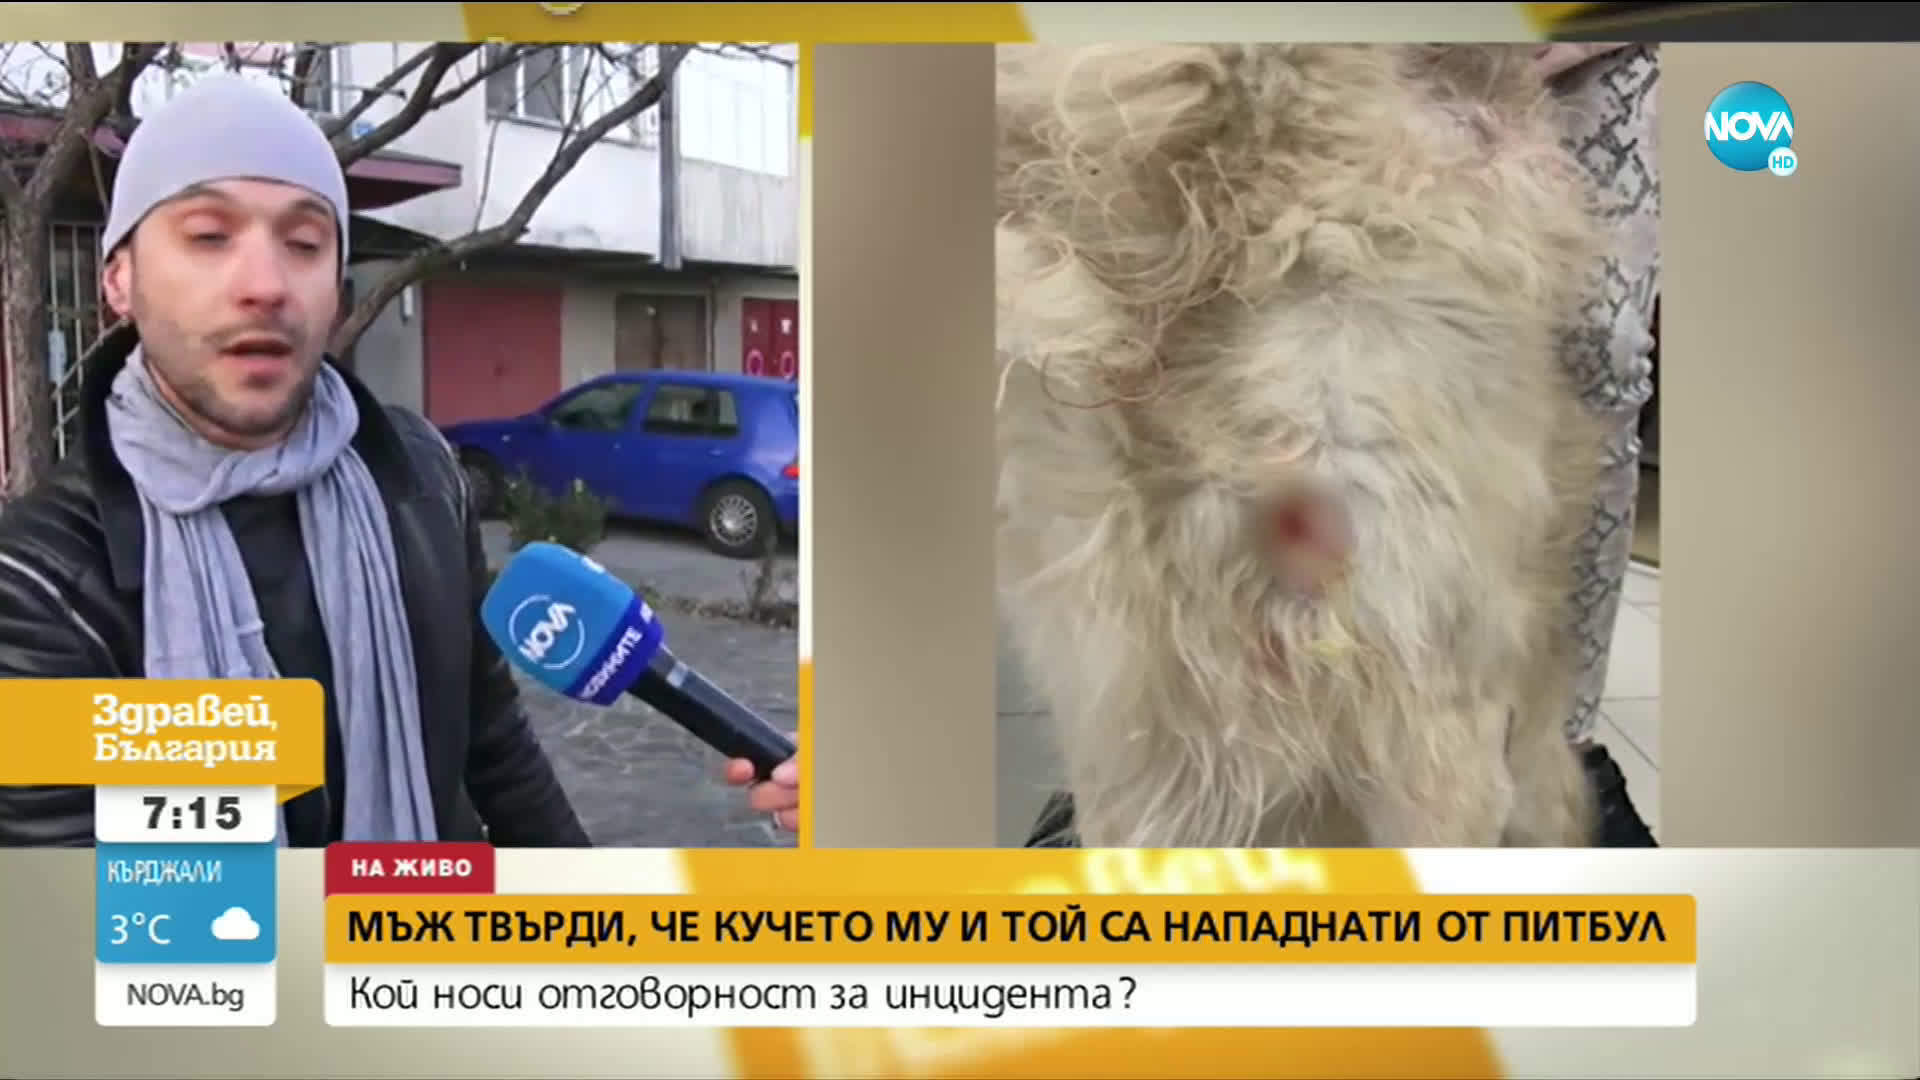 Мъж твърди, че той и кучето му са били нападнати от питбул